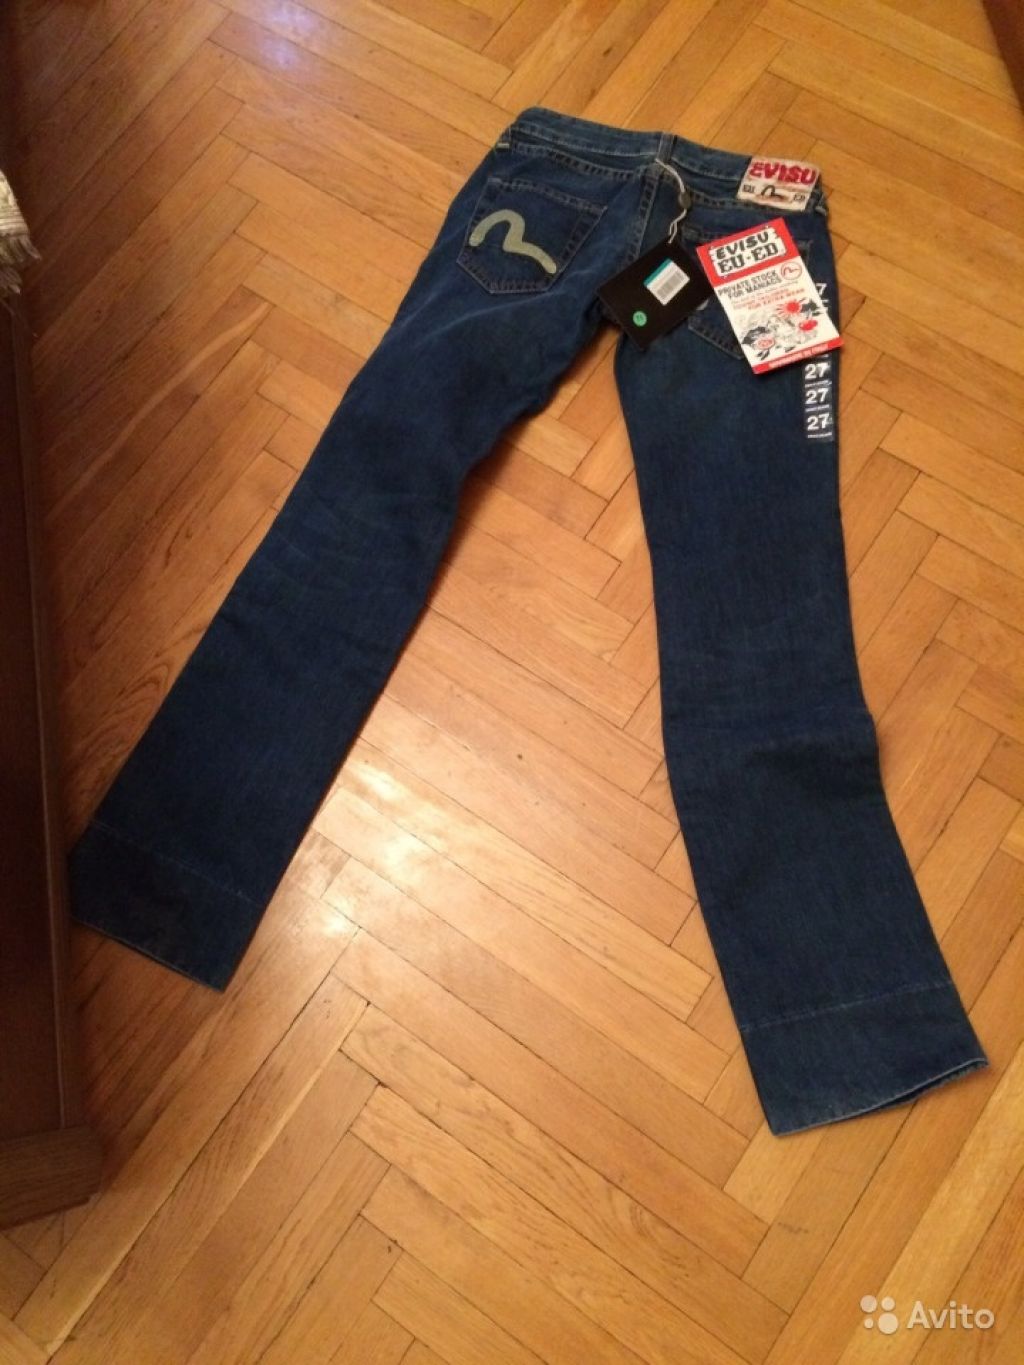 Evisu jeans 27 size новые в Москве. Фото 1